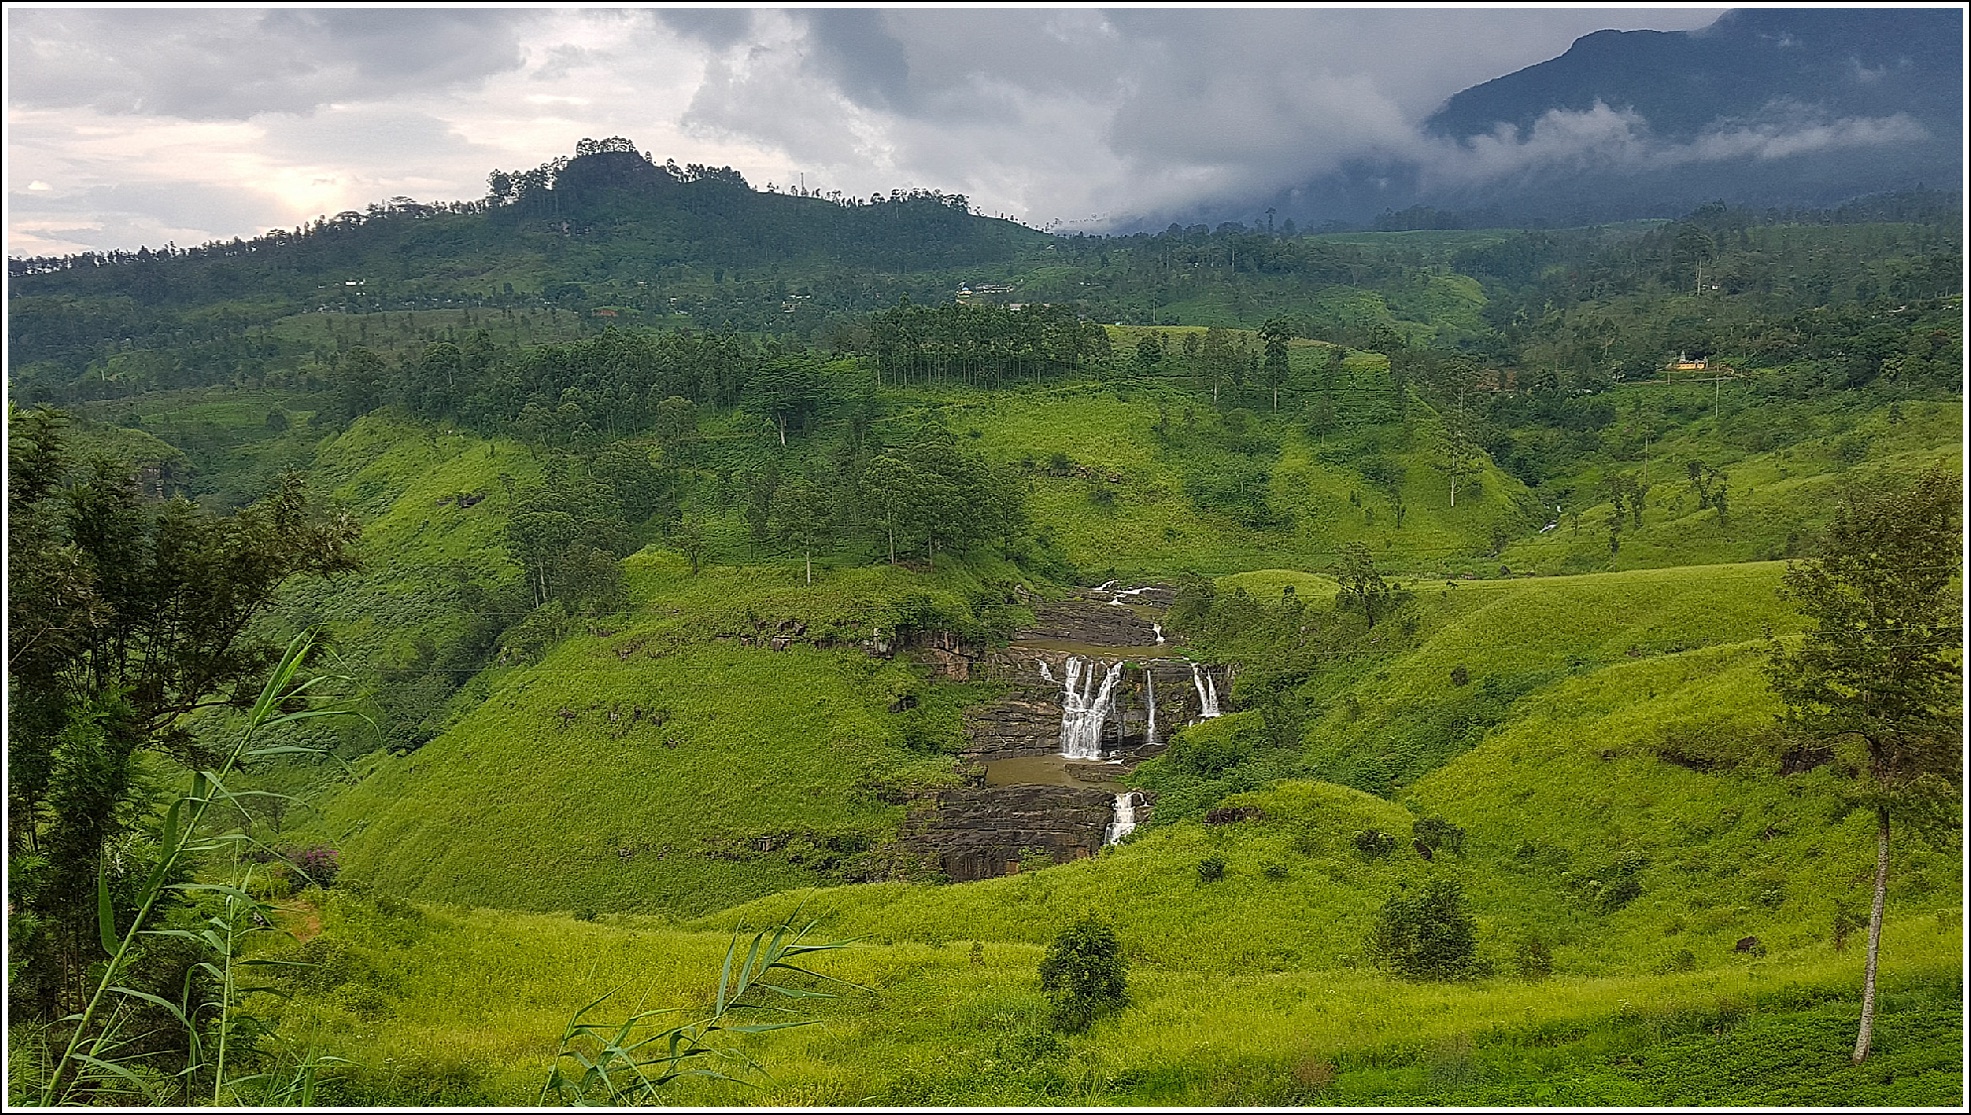 Te-plantasjer, togtur og verdens ende i høylandet på Sri Lanka -  GlobetrotterElisa